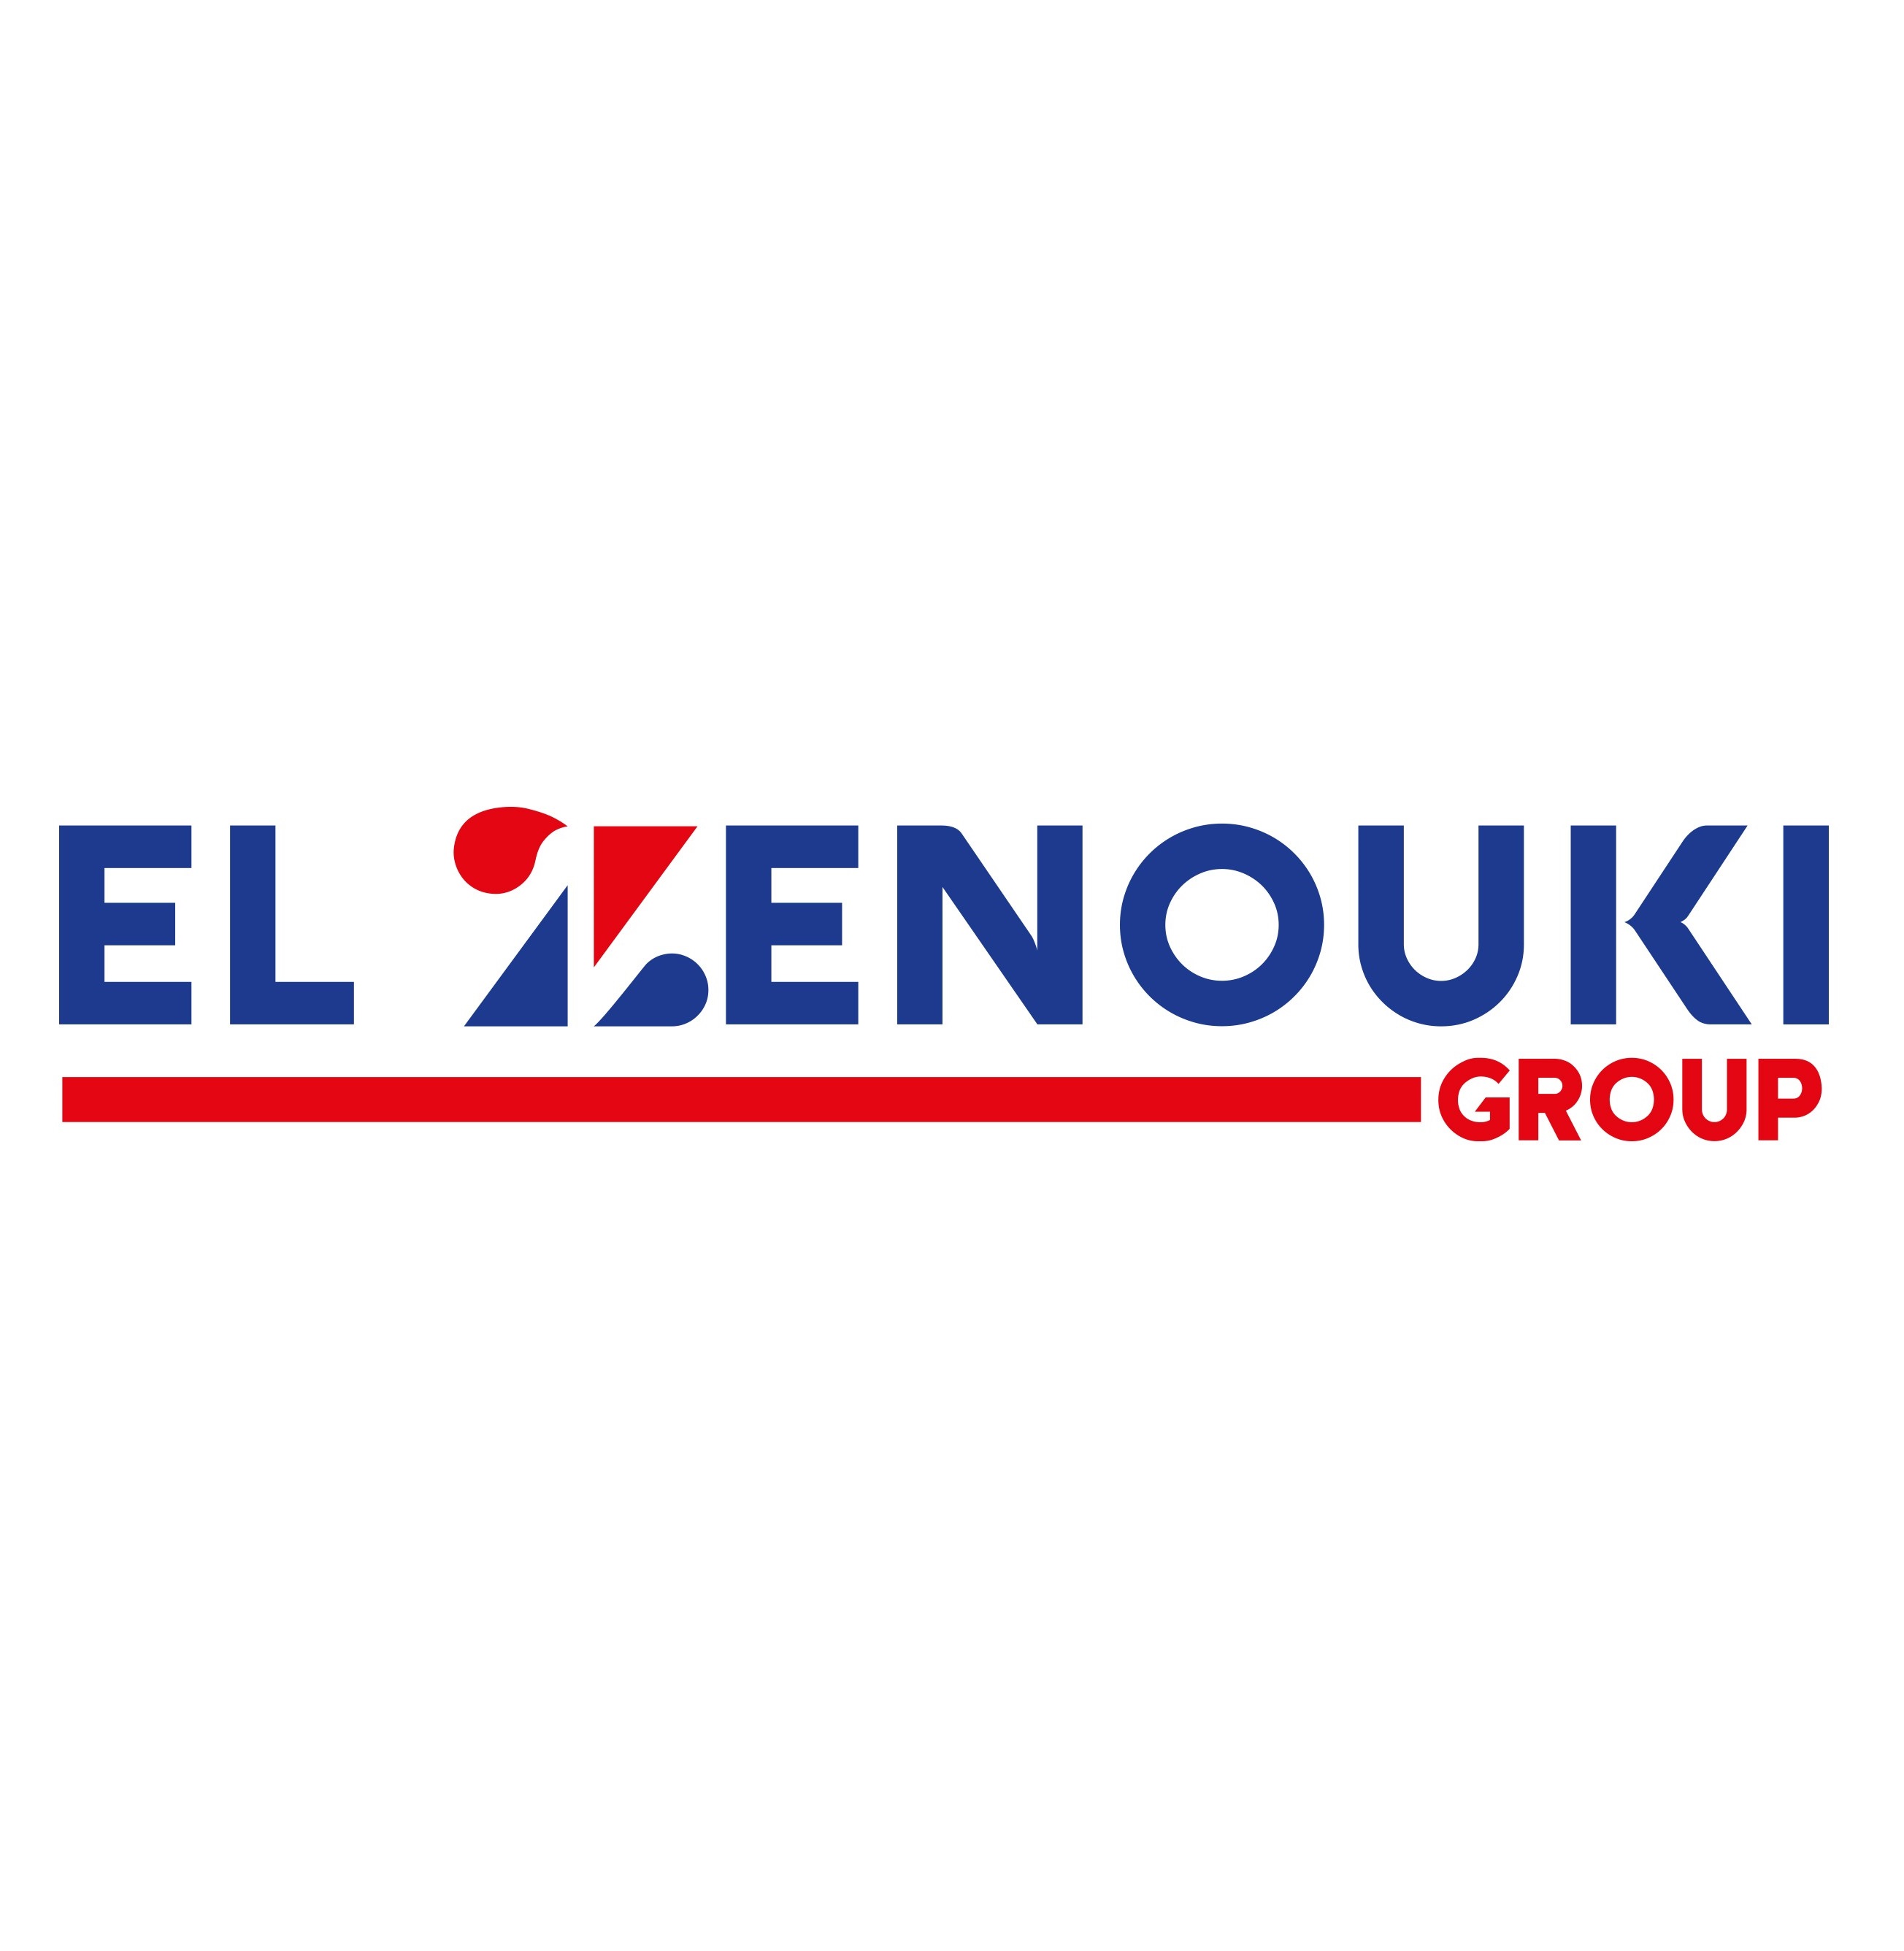 Elzenouki Group